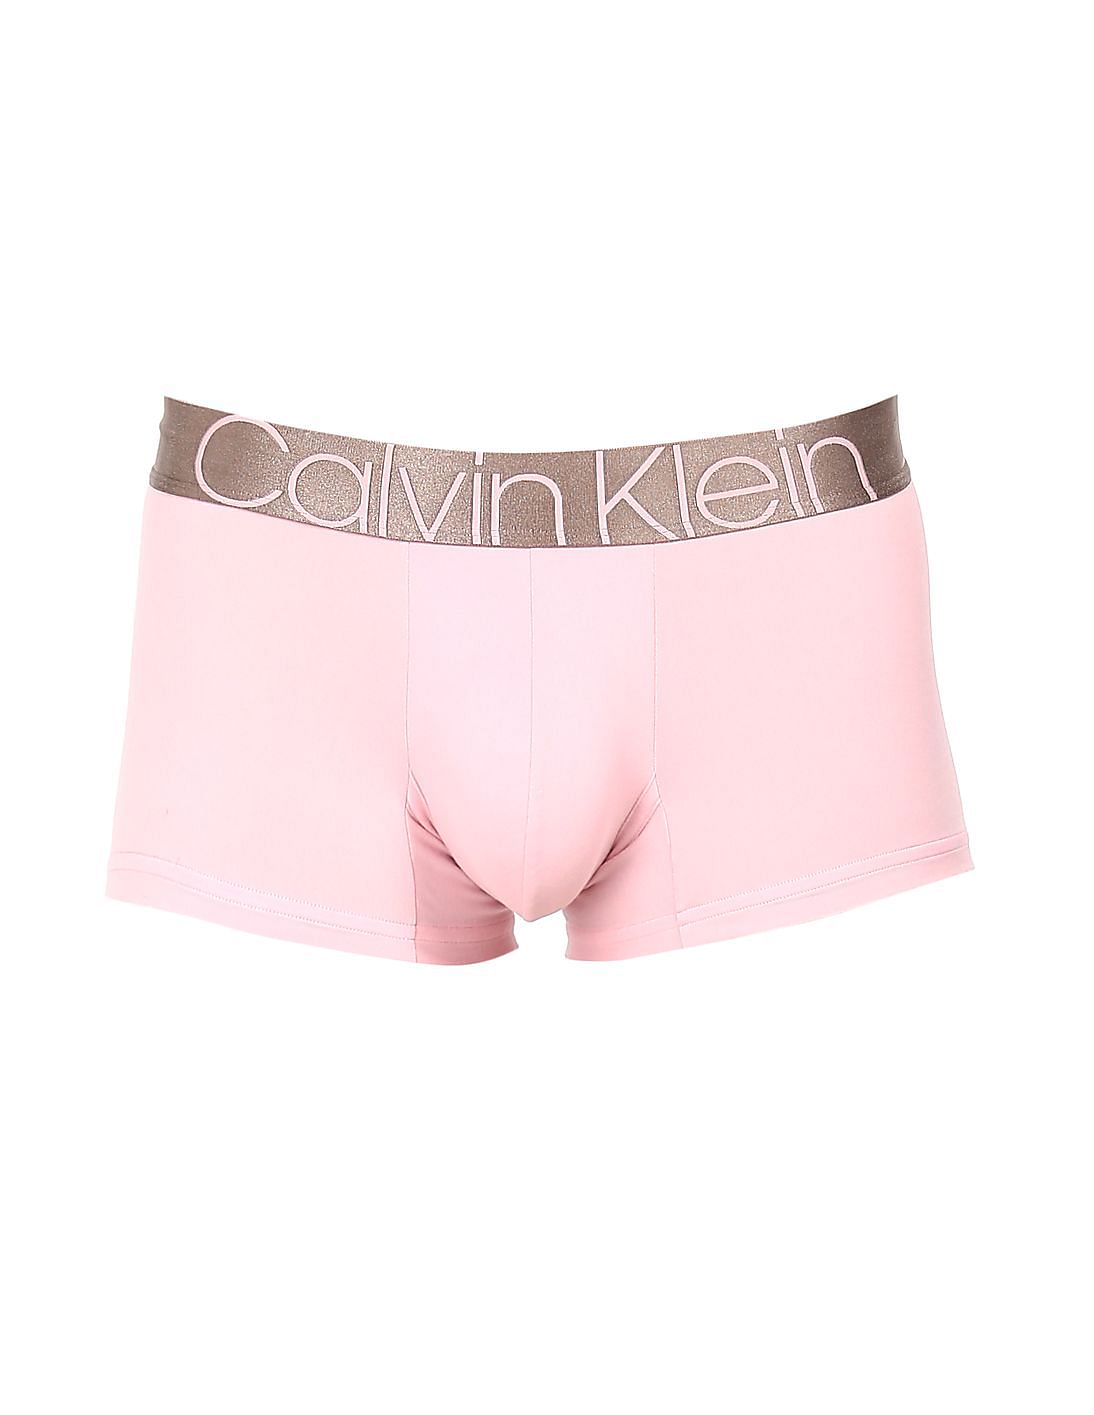 Calvin Klein - 365 Neon Gift set - 2 Pack Pink Lingerie - Zavvi US